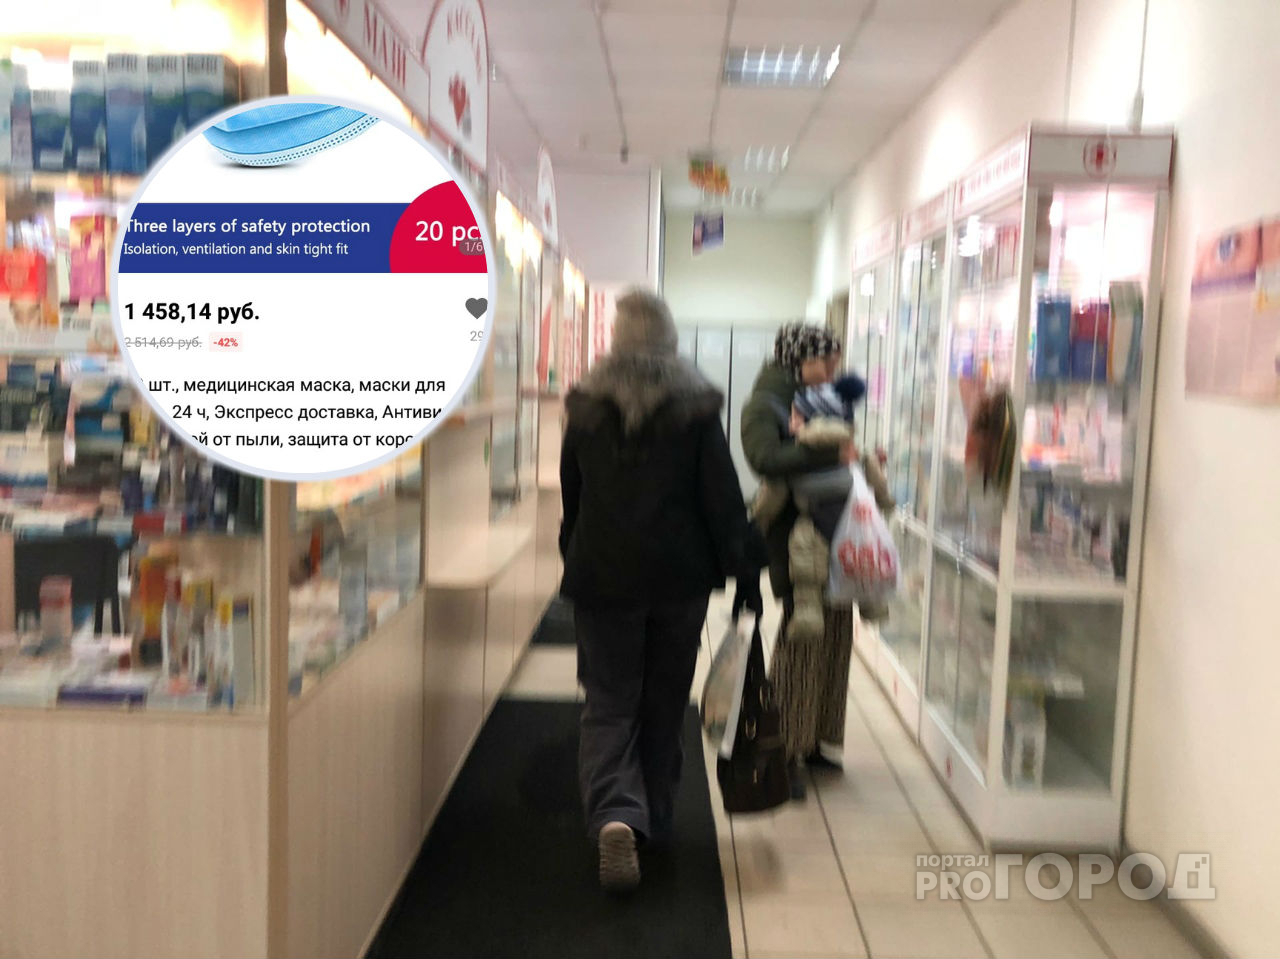 "20 штук - 1500 рублей": ярославцы бьют тревогу из-за дефицита медмасок в Ярославле